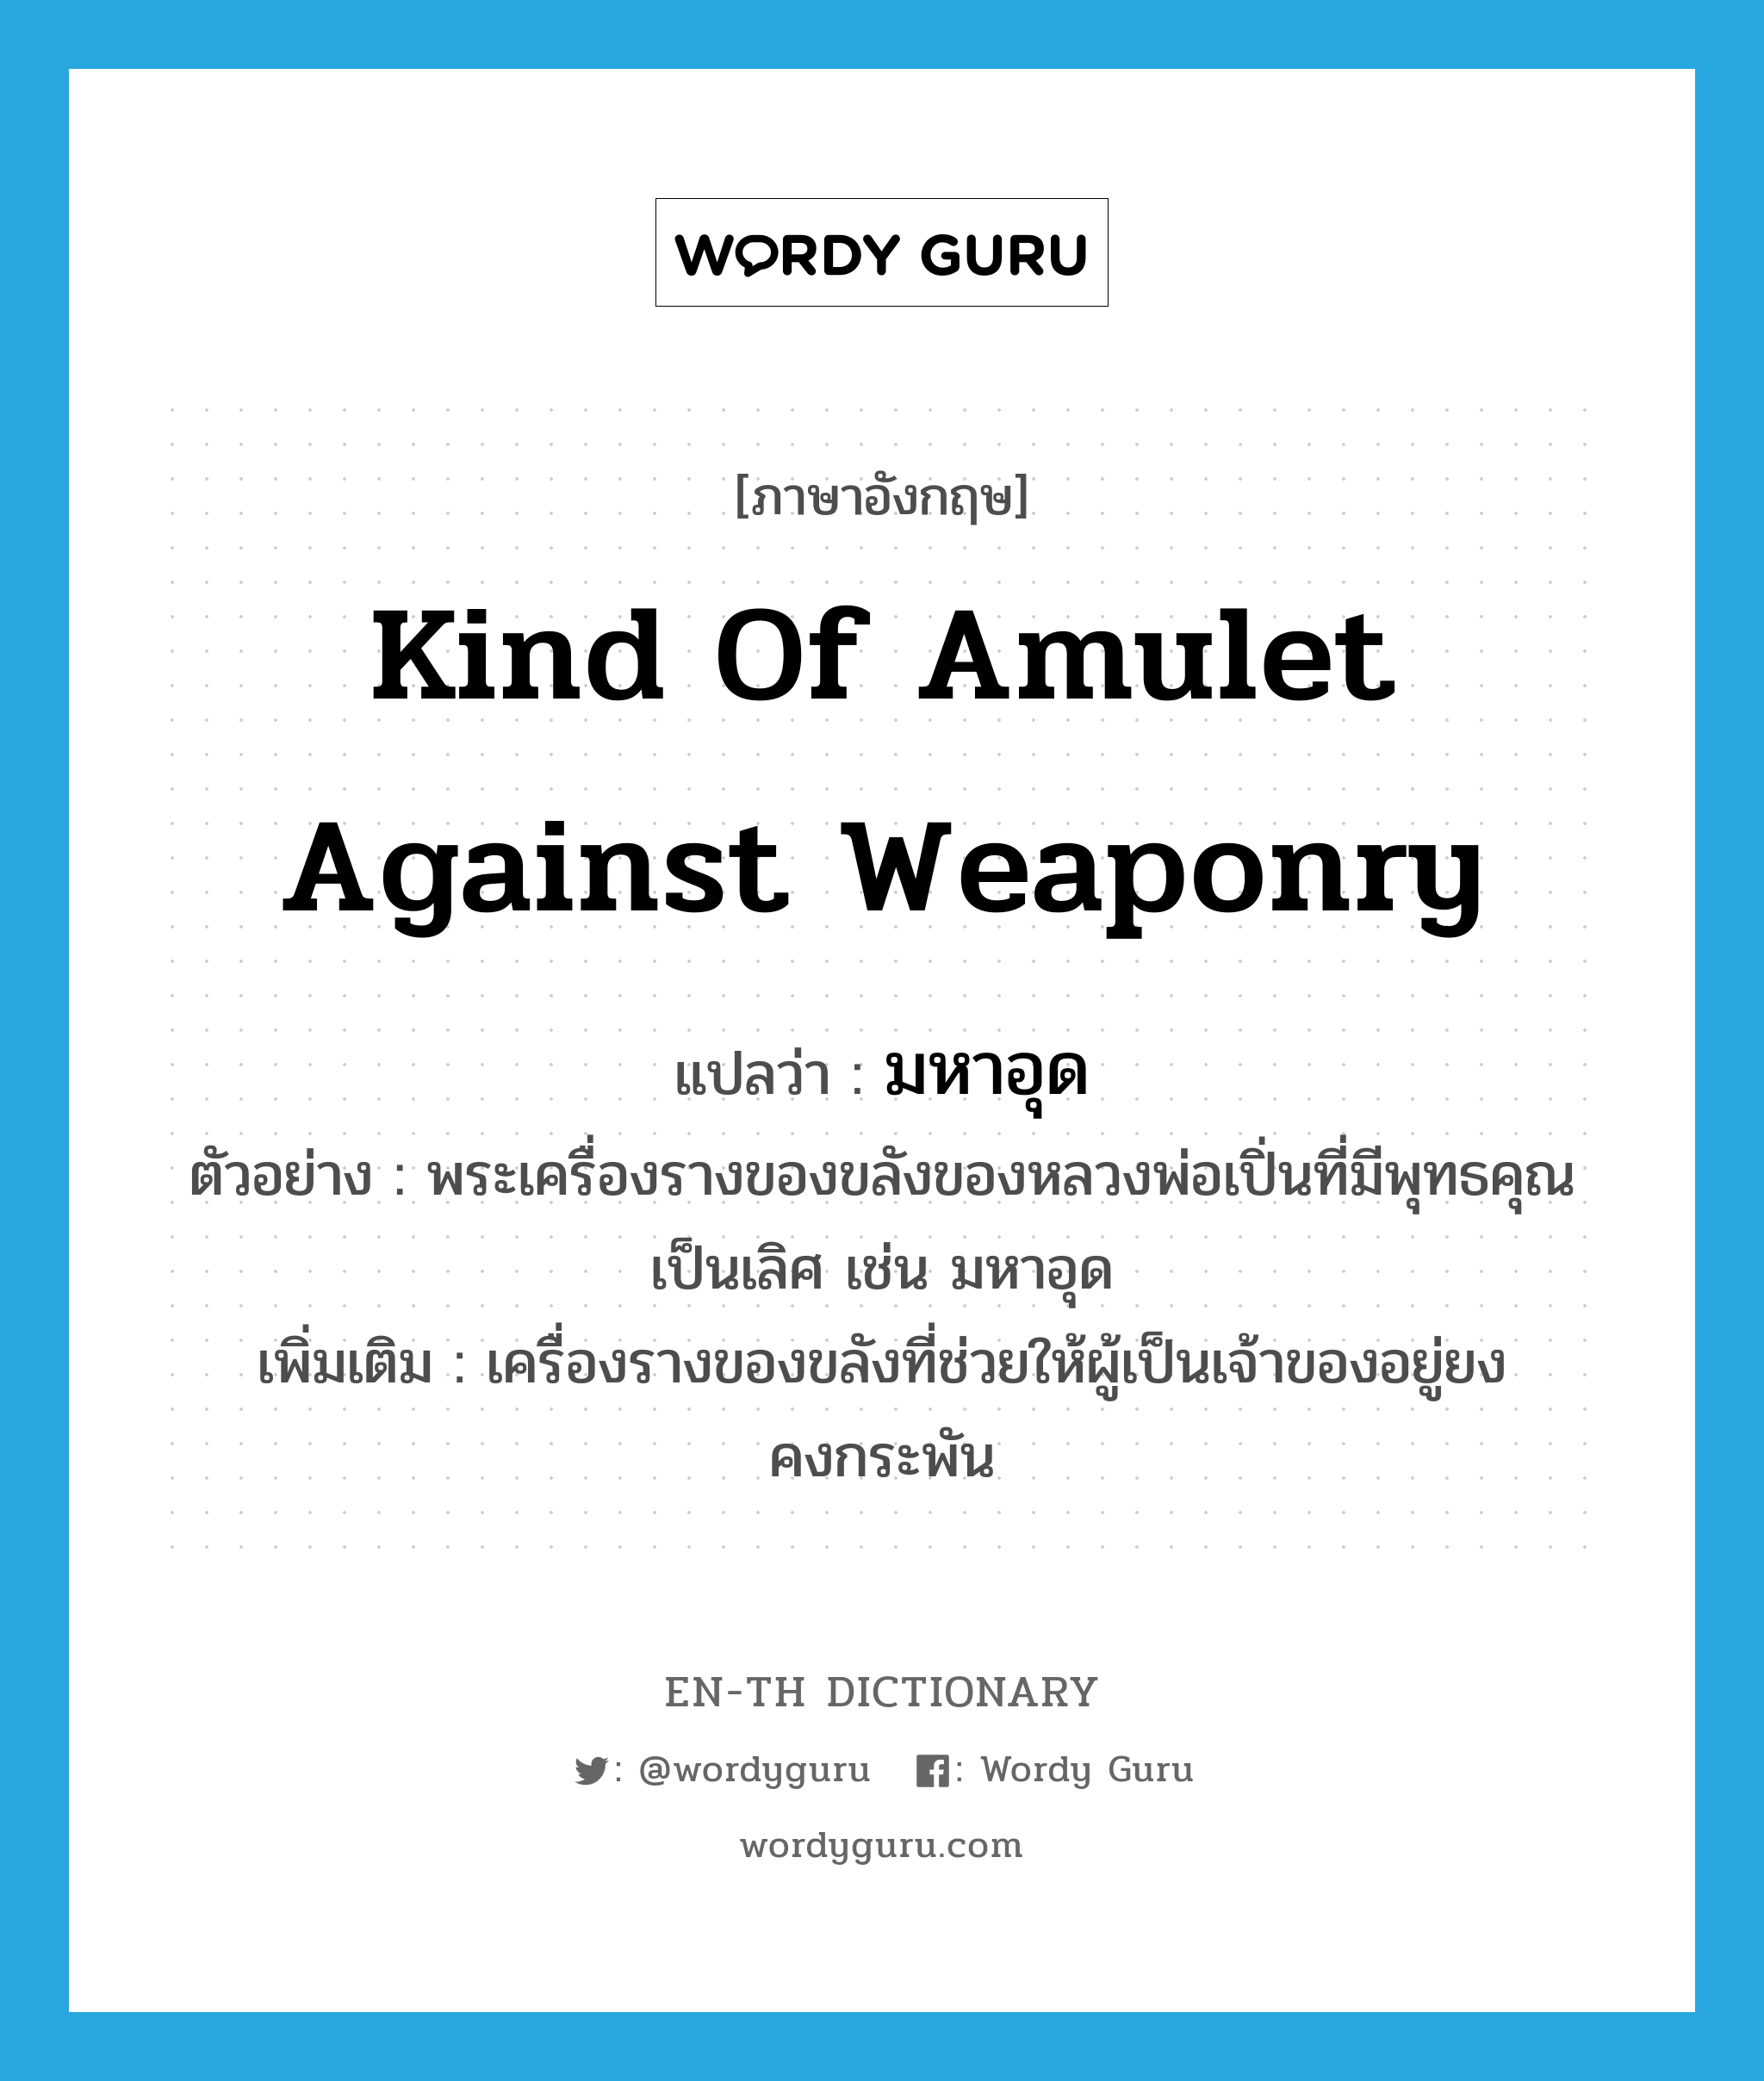 kind of amulet against weaponry แปลว่า?, คำศัพท์ภาษาอังกฤษ kind of amulet against weaponry แปลว่า มหาอุด ประเภท N ตัวอย่าง พระเครื่องรางของขลังของหลวงพ่อเปิ่นที่มีพุทธคุณเป็นเลิศ เช่น มหาอุด เพิ่มเติม เครื่องรางของขลังที่ช่วยให้ผู้เป็นเจ้าของอยู่ยงคงกระพัน หมวด N